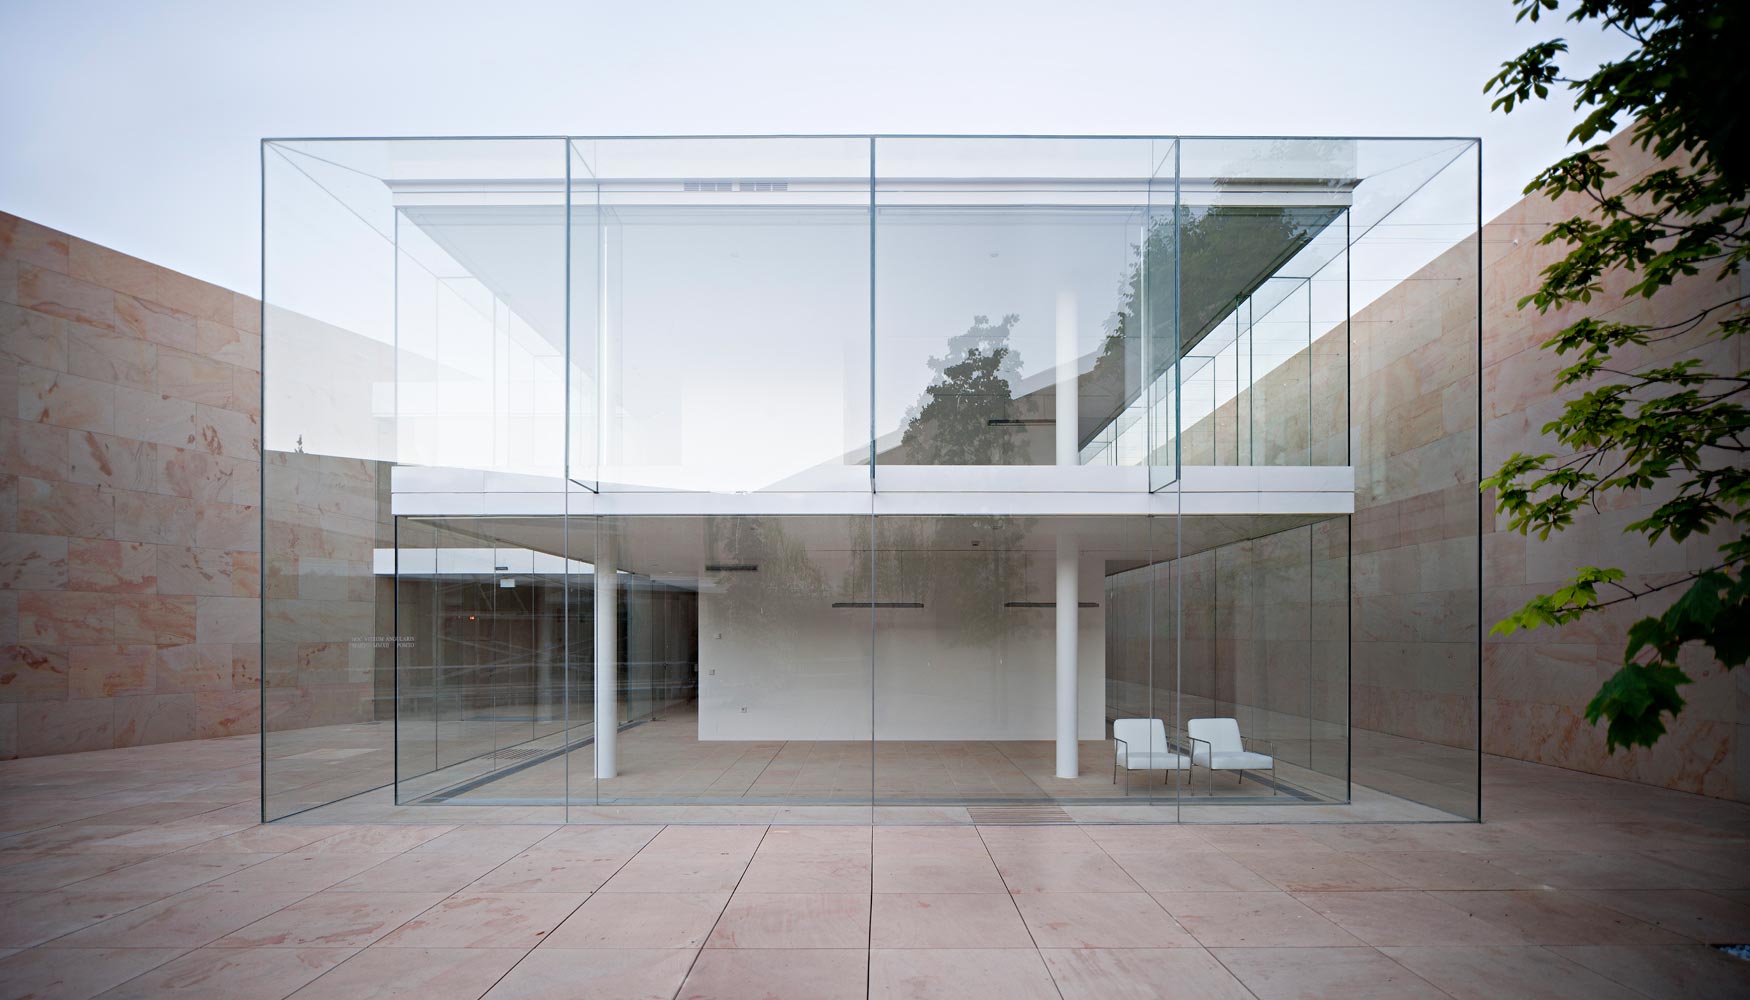 La fachada exterior cuenta con grandes piezas de vidrio